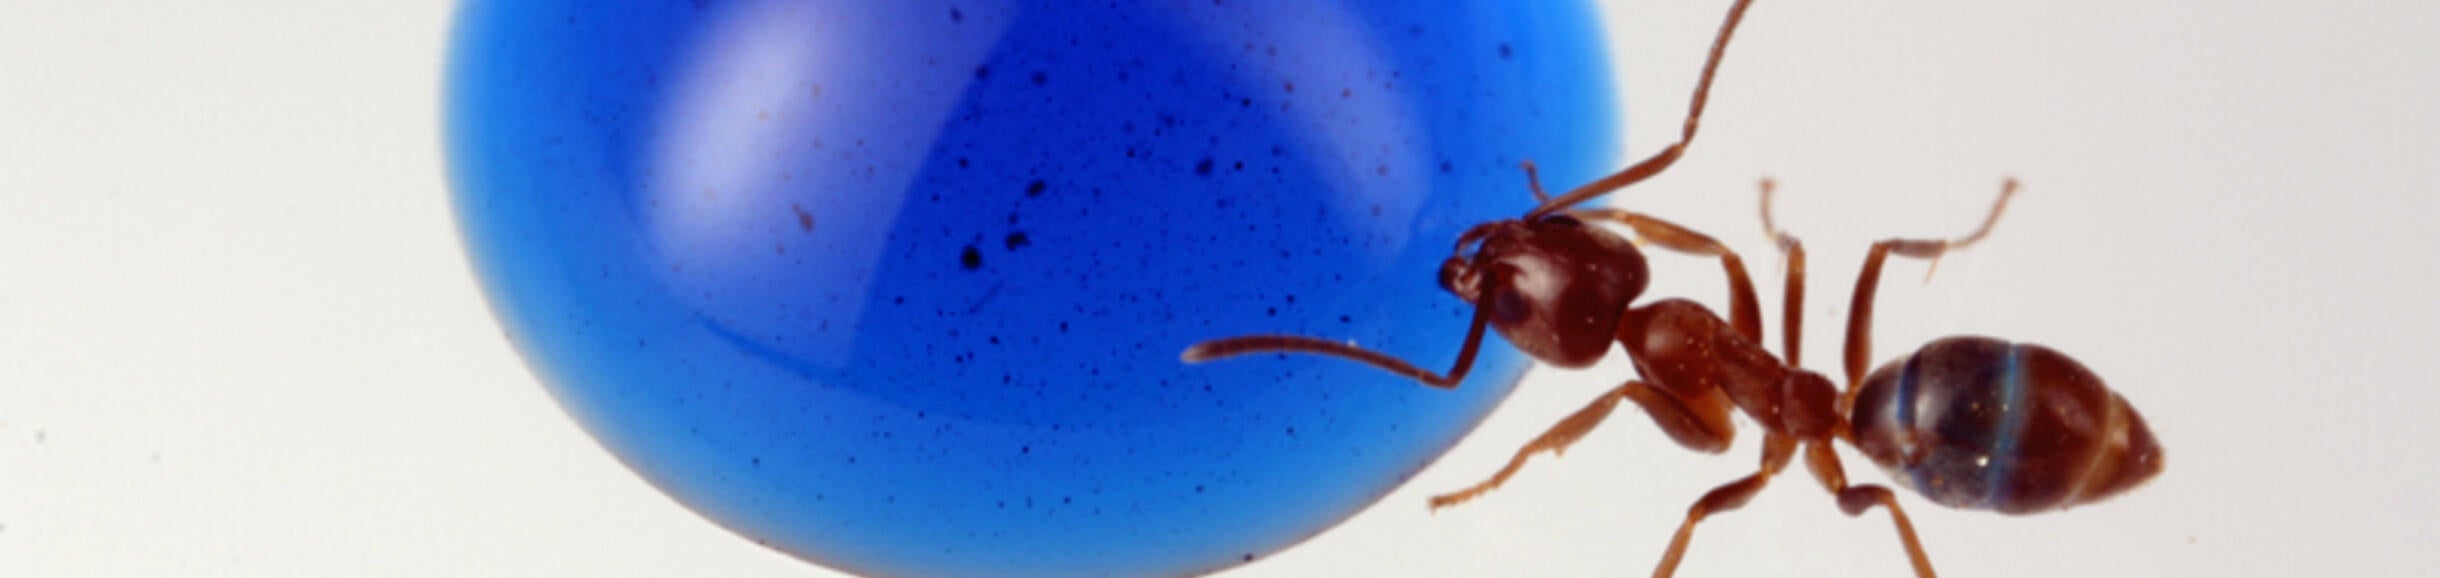 Argentine ant feeding on a blue drop